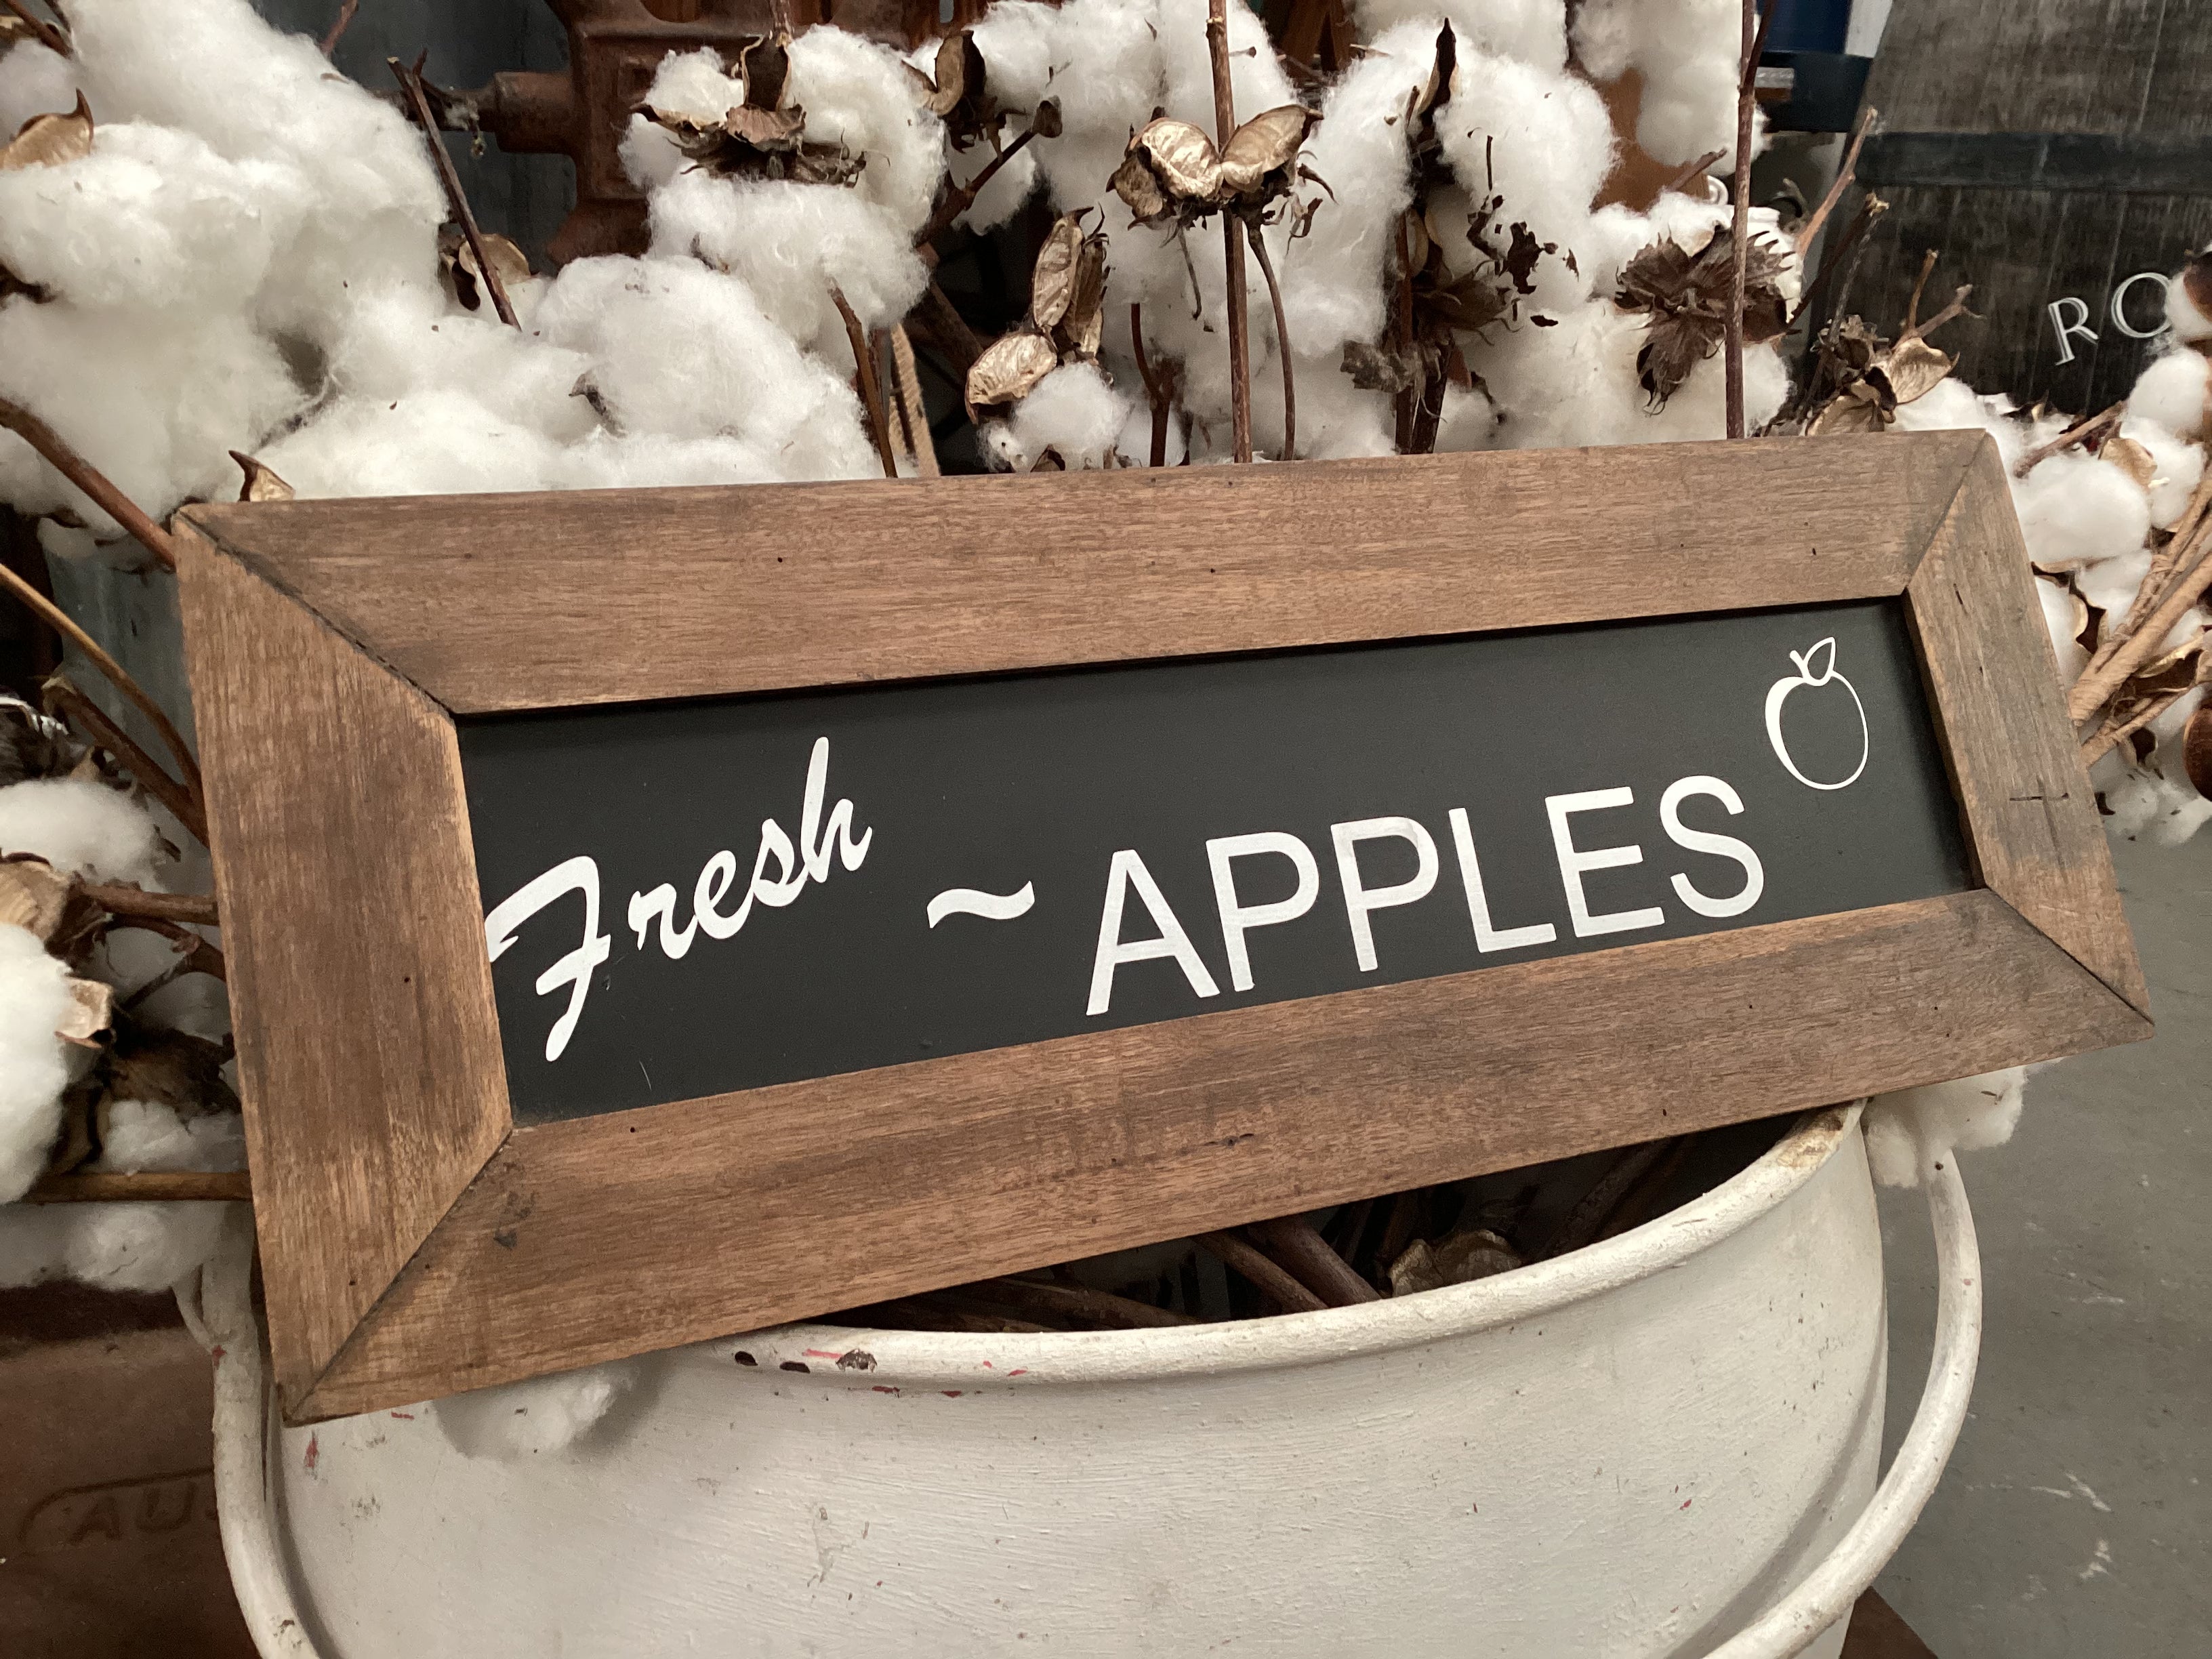 Fresh APPLES Handmade Sign